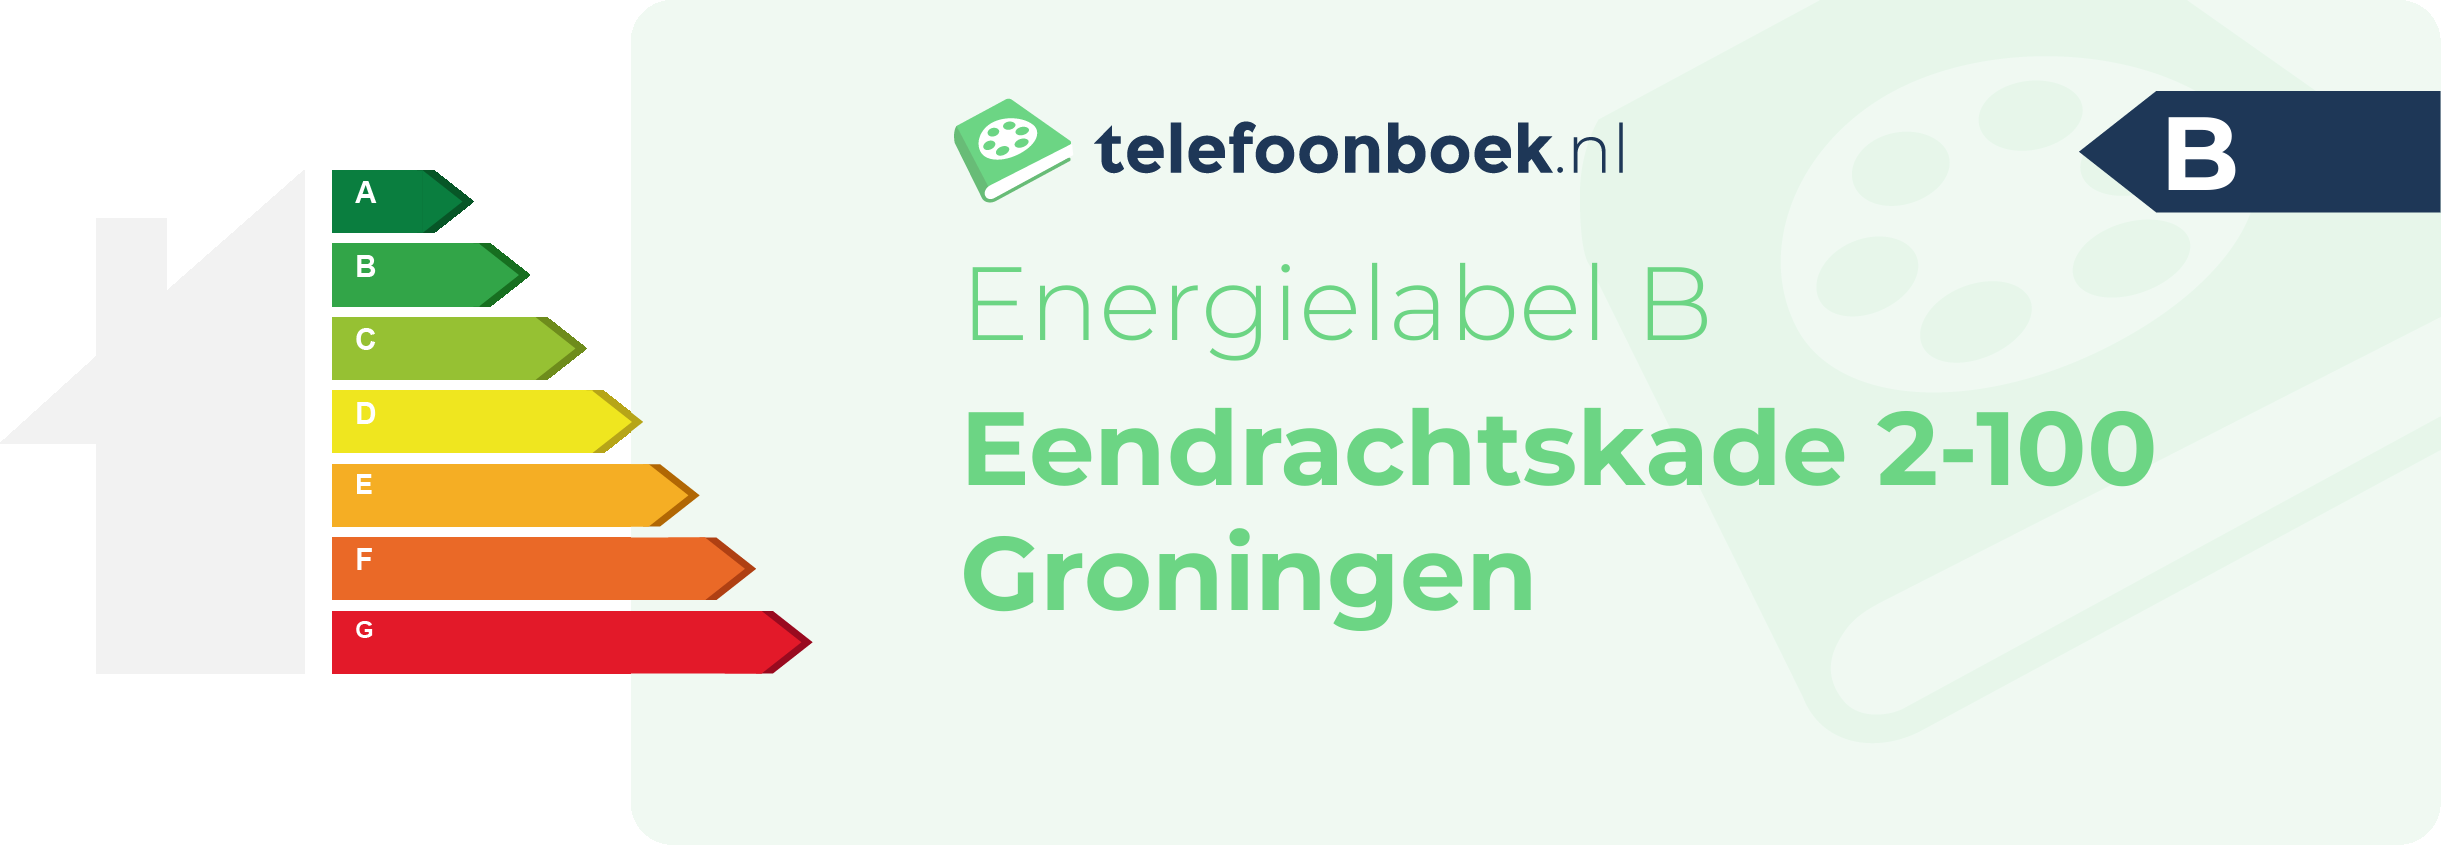 Energielabel Eendrachtskade 2-100 Groningen